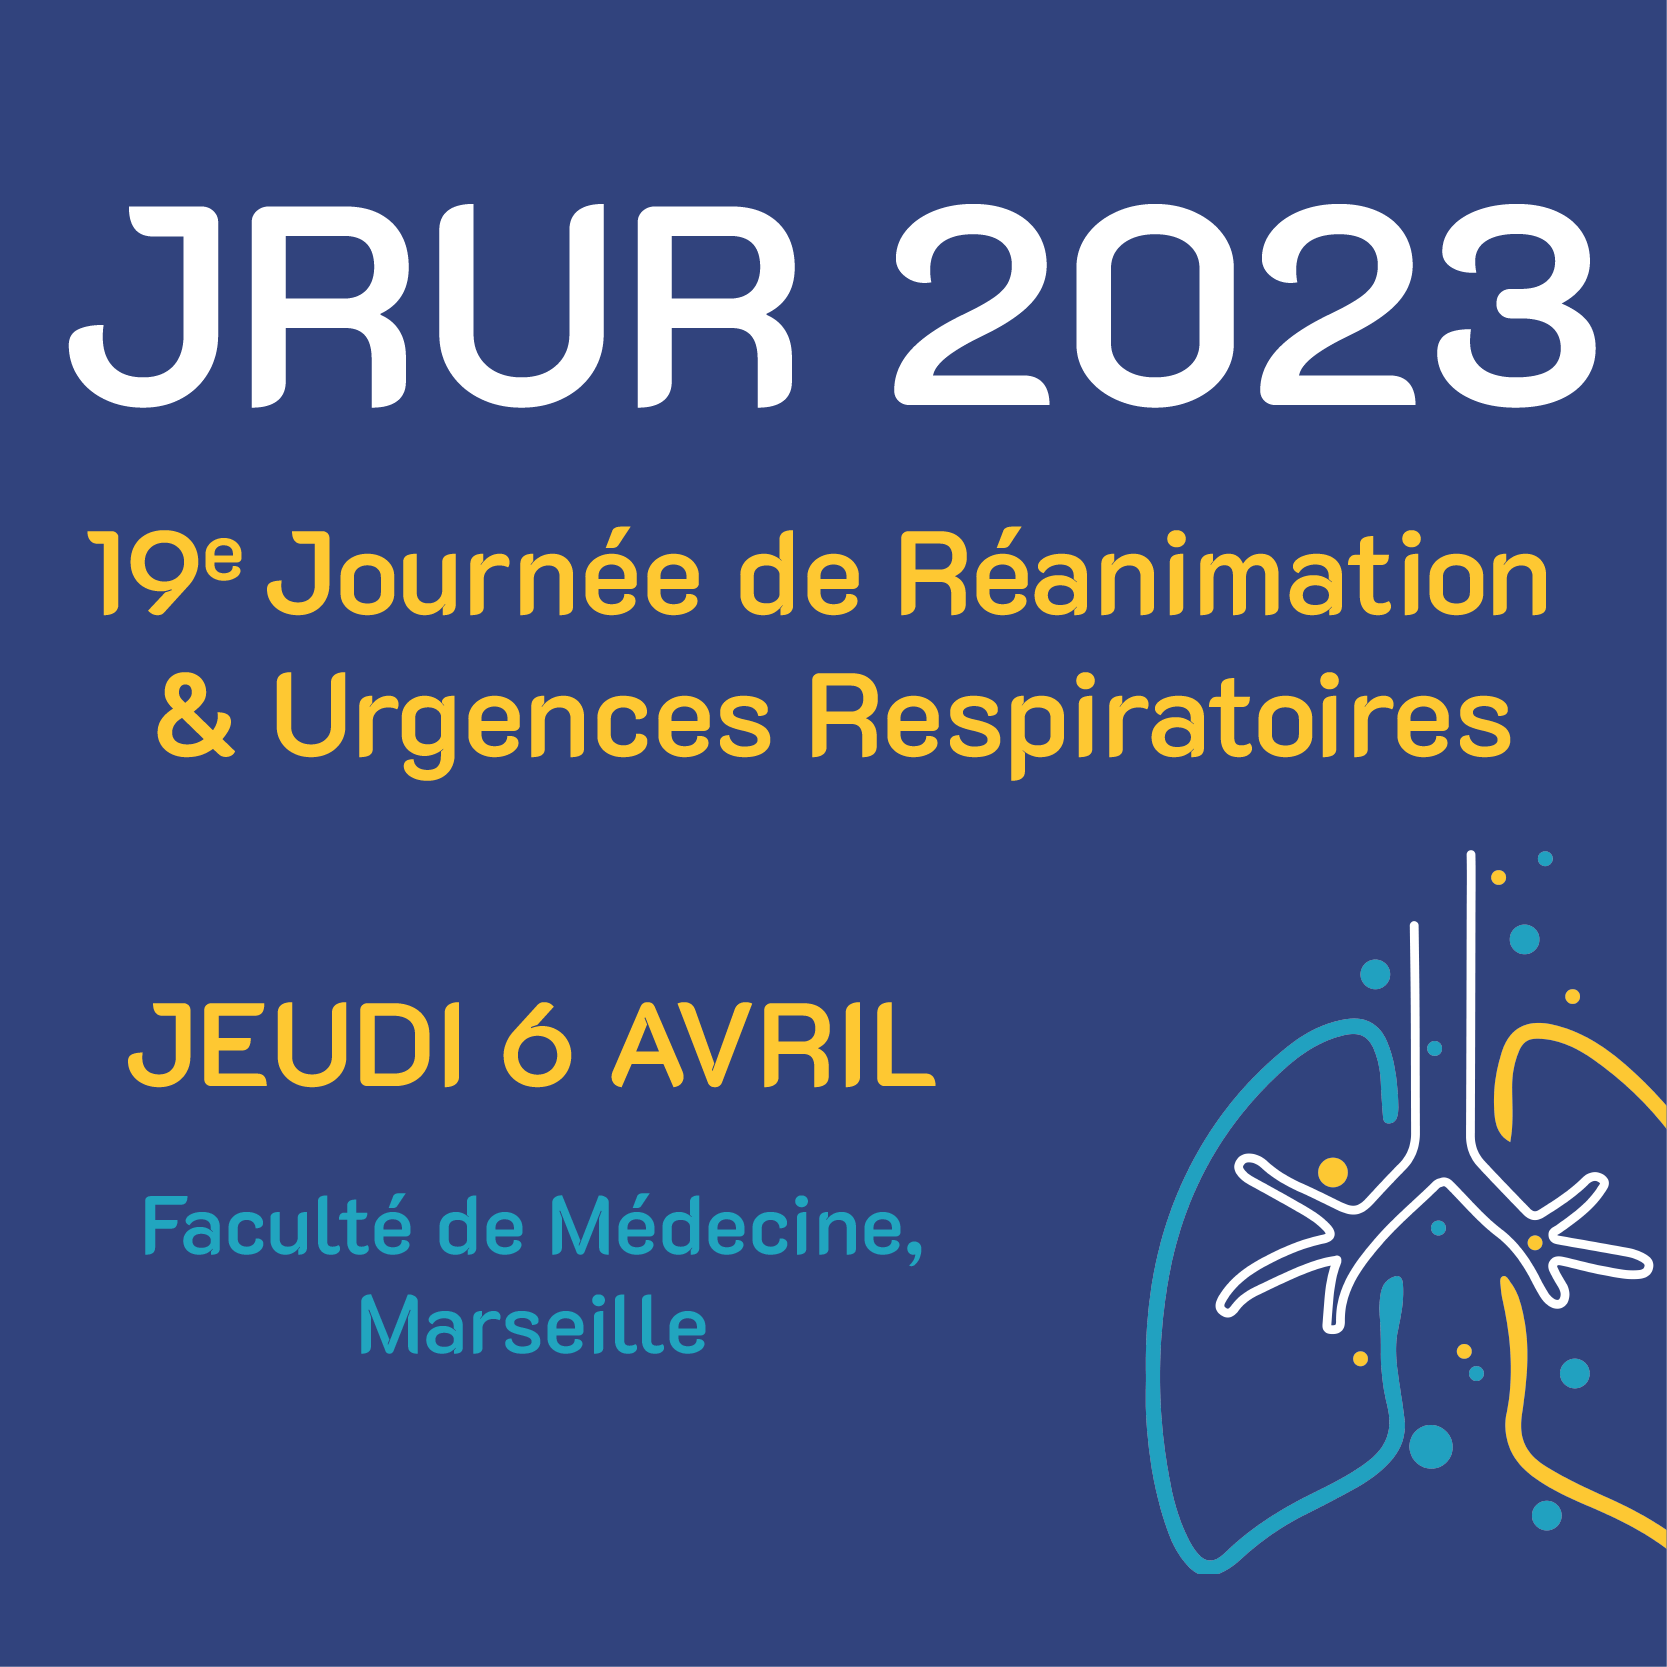 19e Journée de Réanimation & Urgences Respiratoires - JRUR 2023